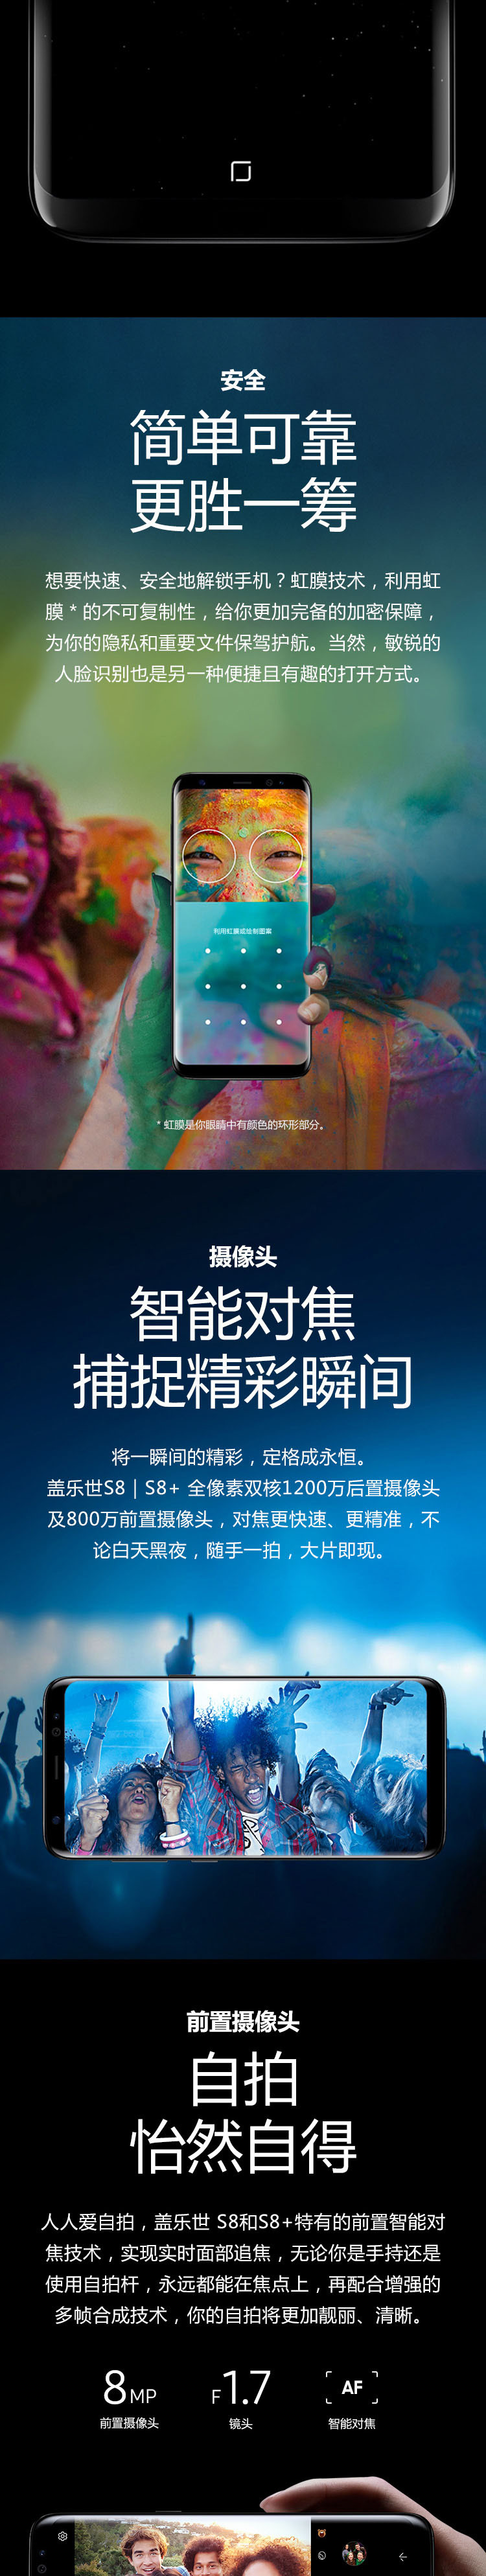 三星/SAMSUNG S8+ SM-G9550 6G+128G 全视曲面屏